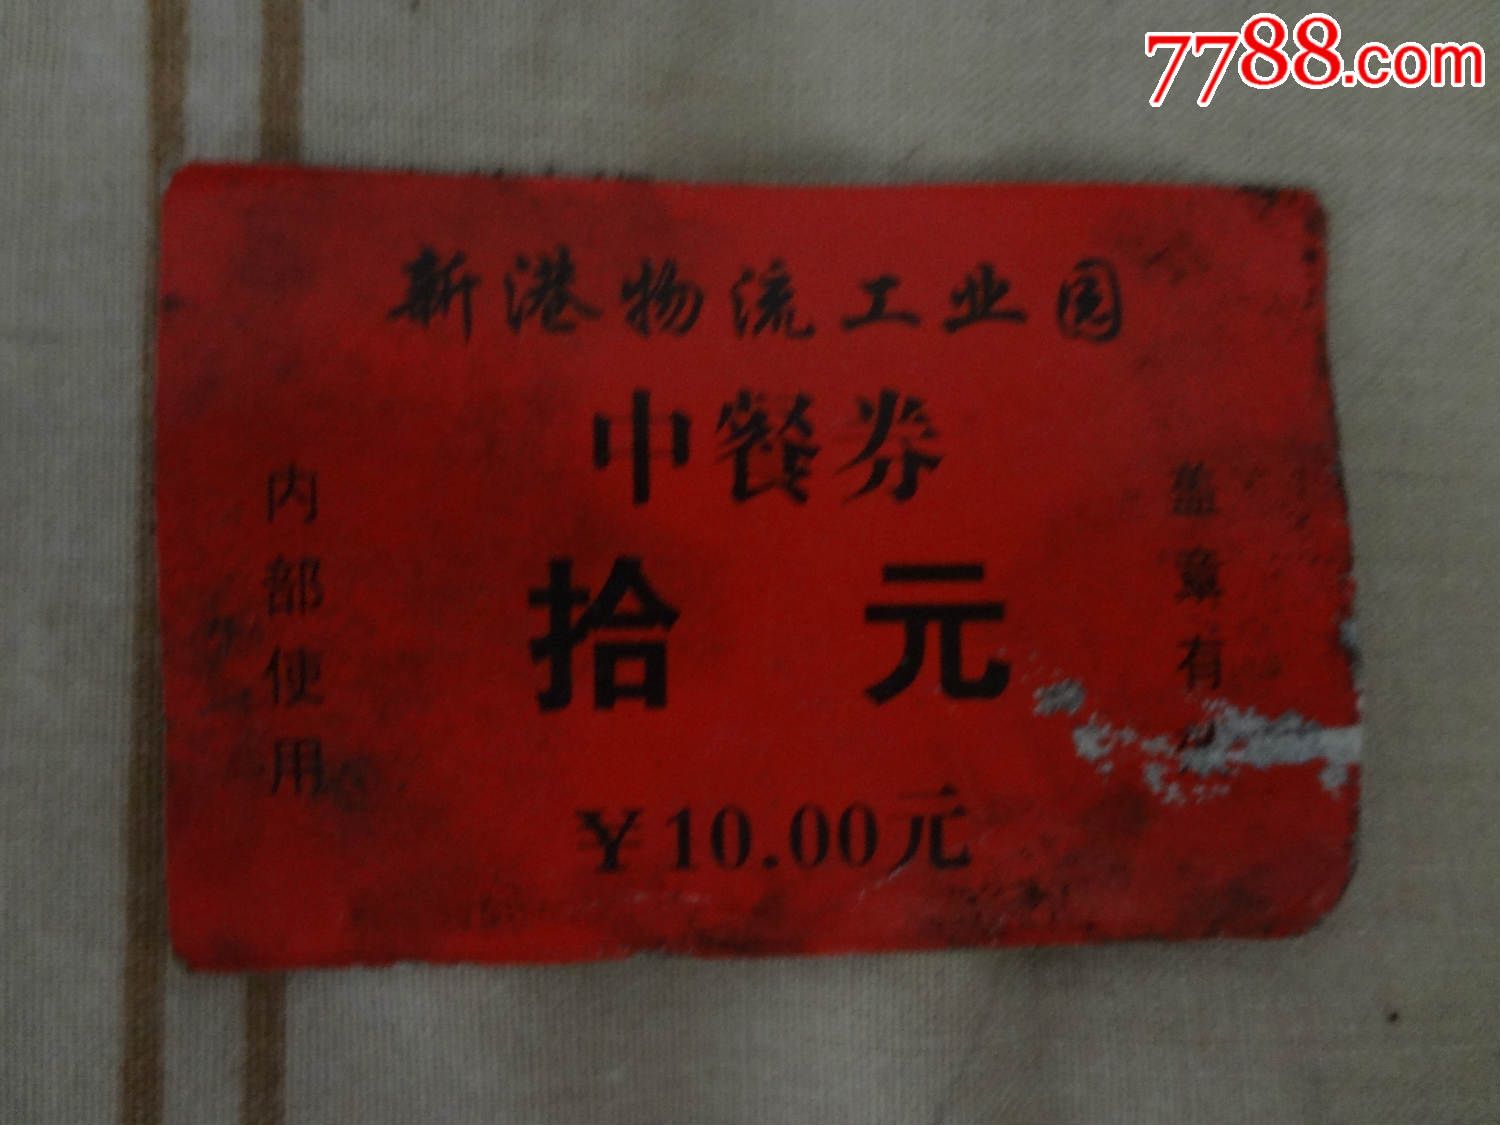 新港物流工业园中餐劵拾元-价格:.5元-se30281